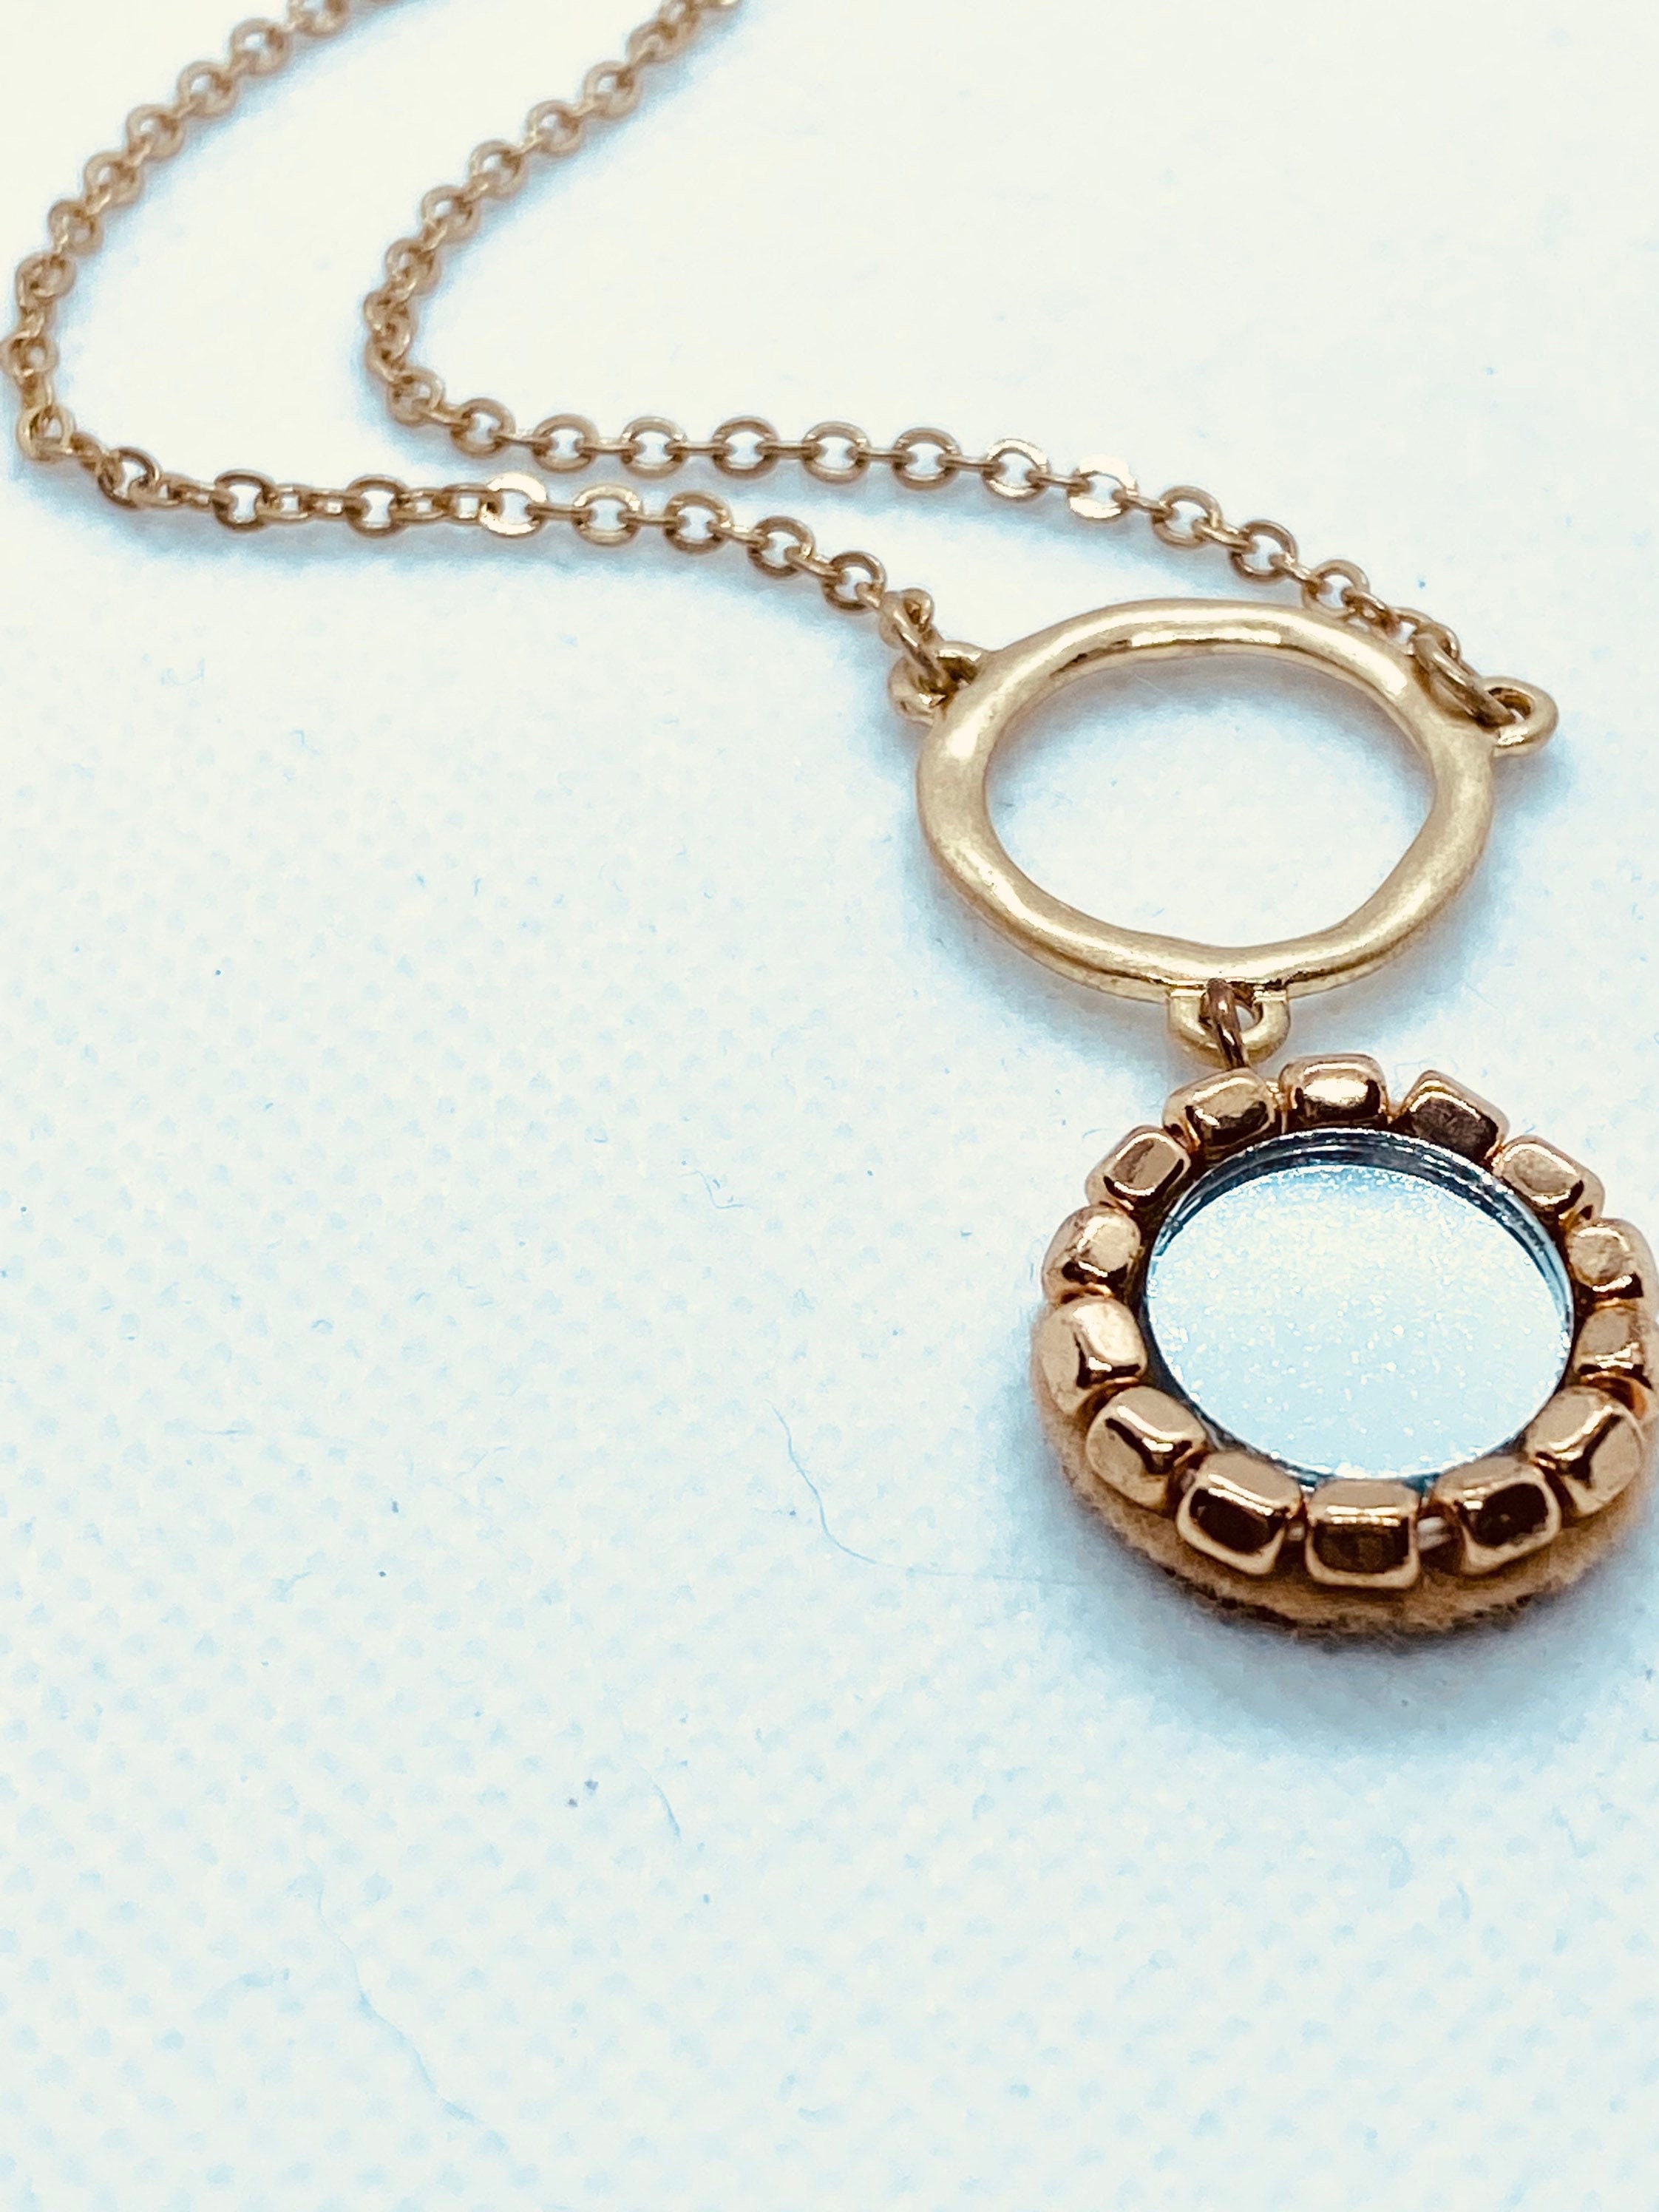 Le collier en forme de miroir (pas d'effet miroir) en plaqué or